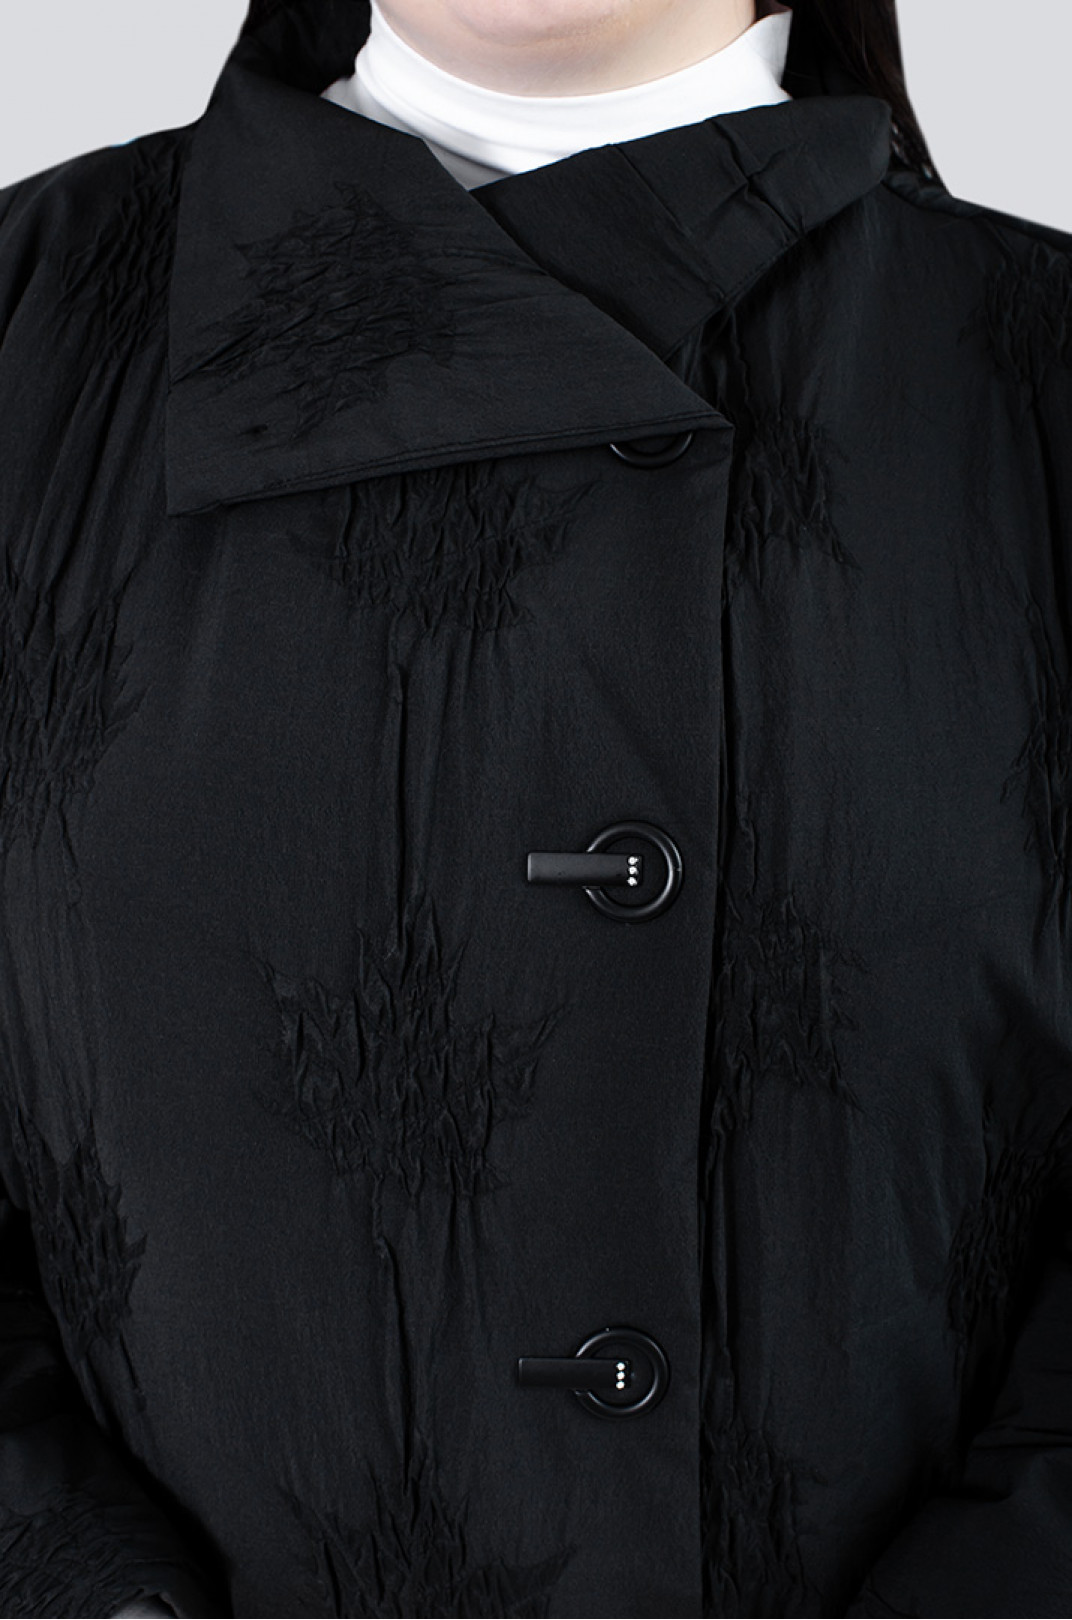 Легкая короткая куртка в текстурный узор супер батал